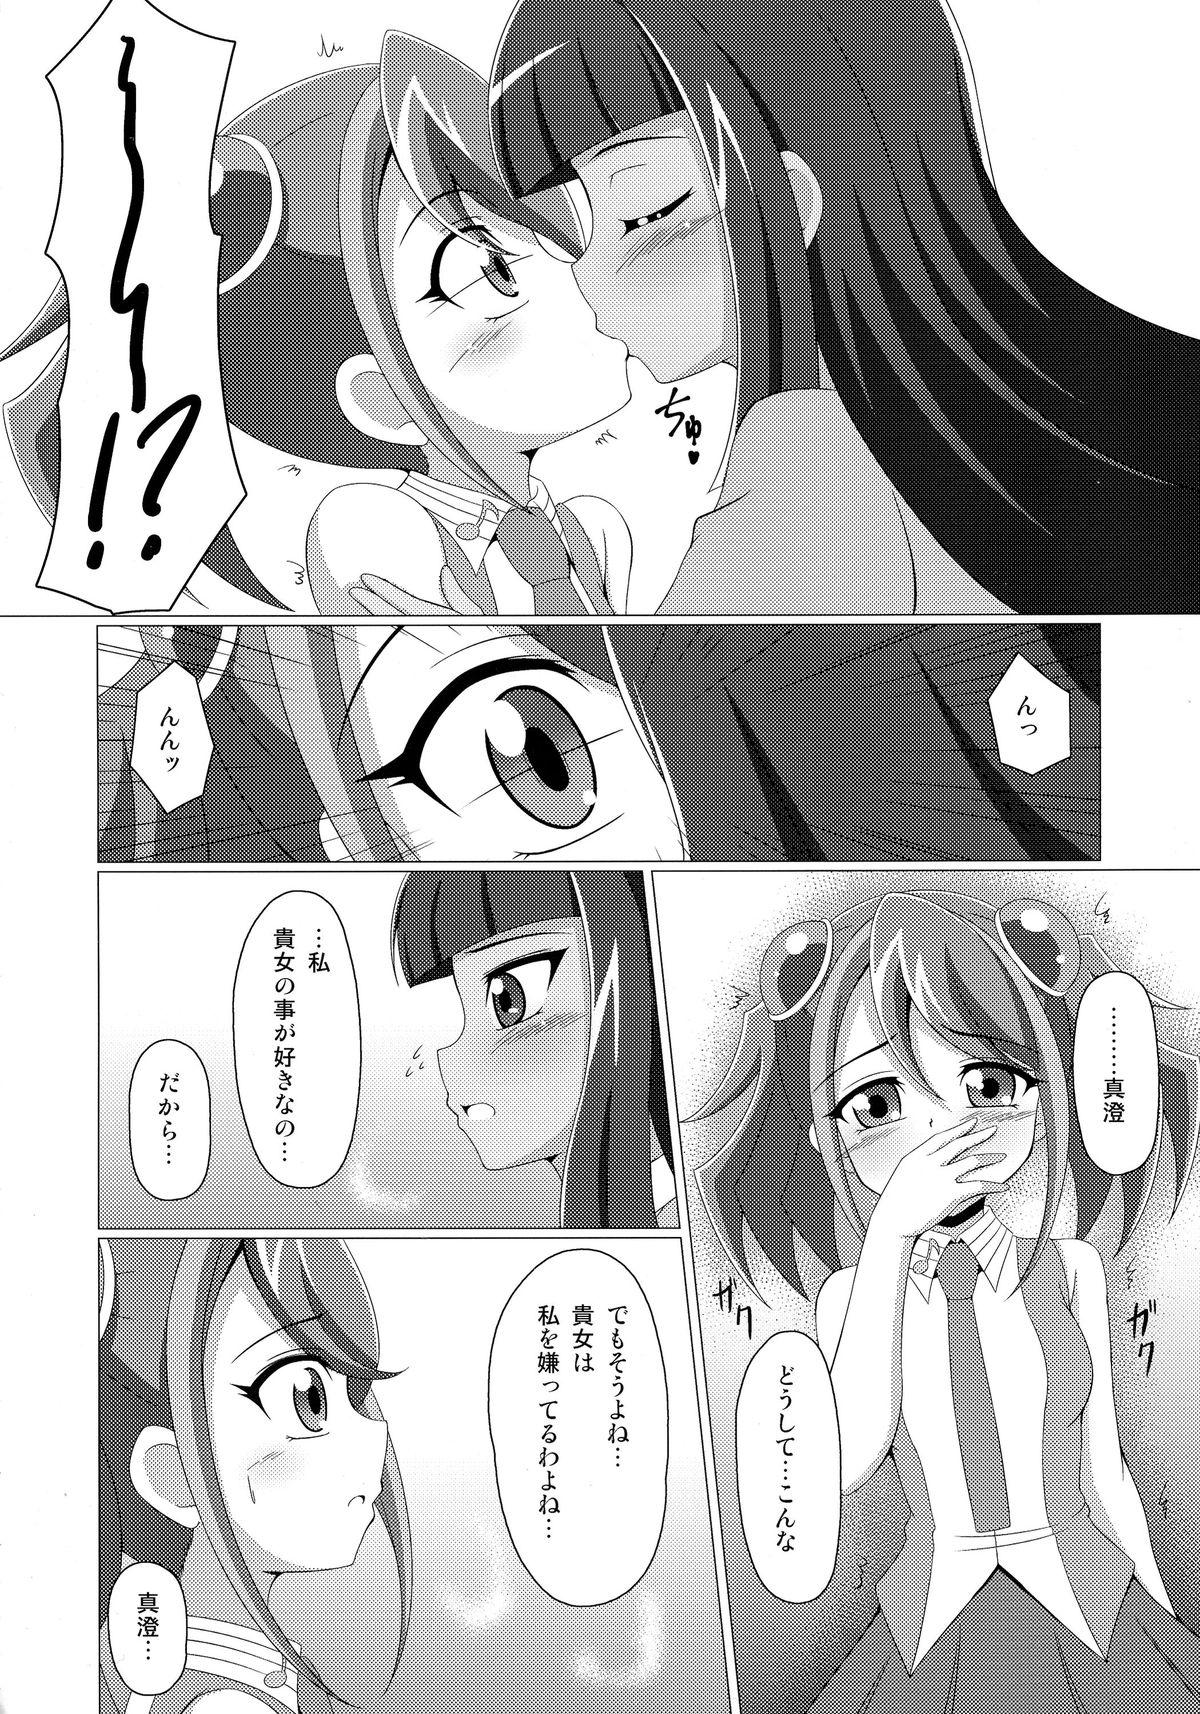 Shesafreak Mieru no Uranai dai Sakusen - Yu-gi-oh arc-v Office Fuck - Page 7